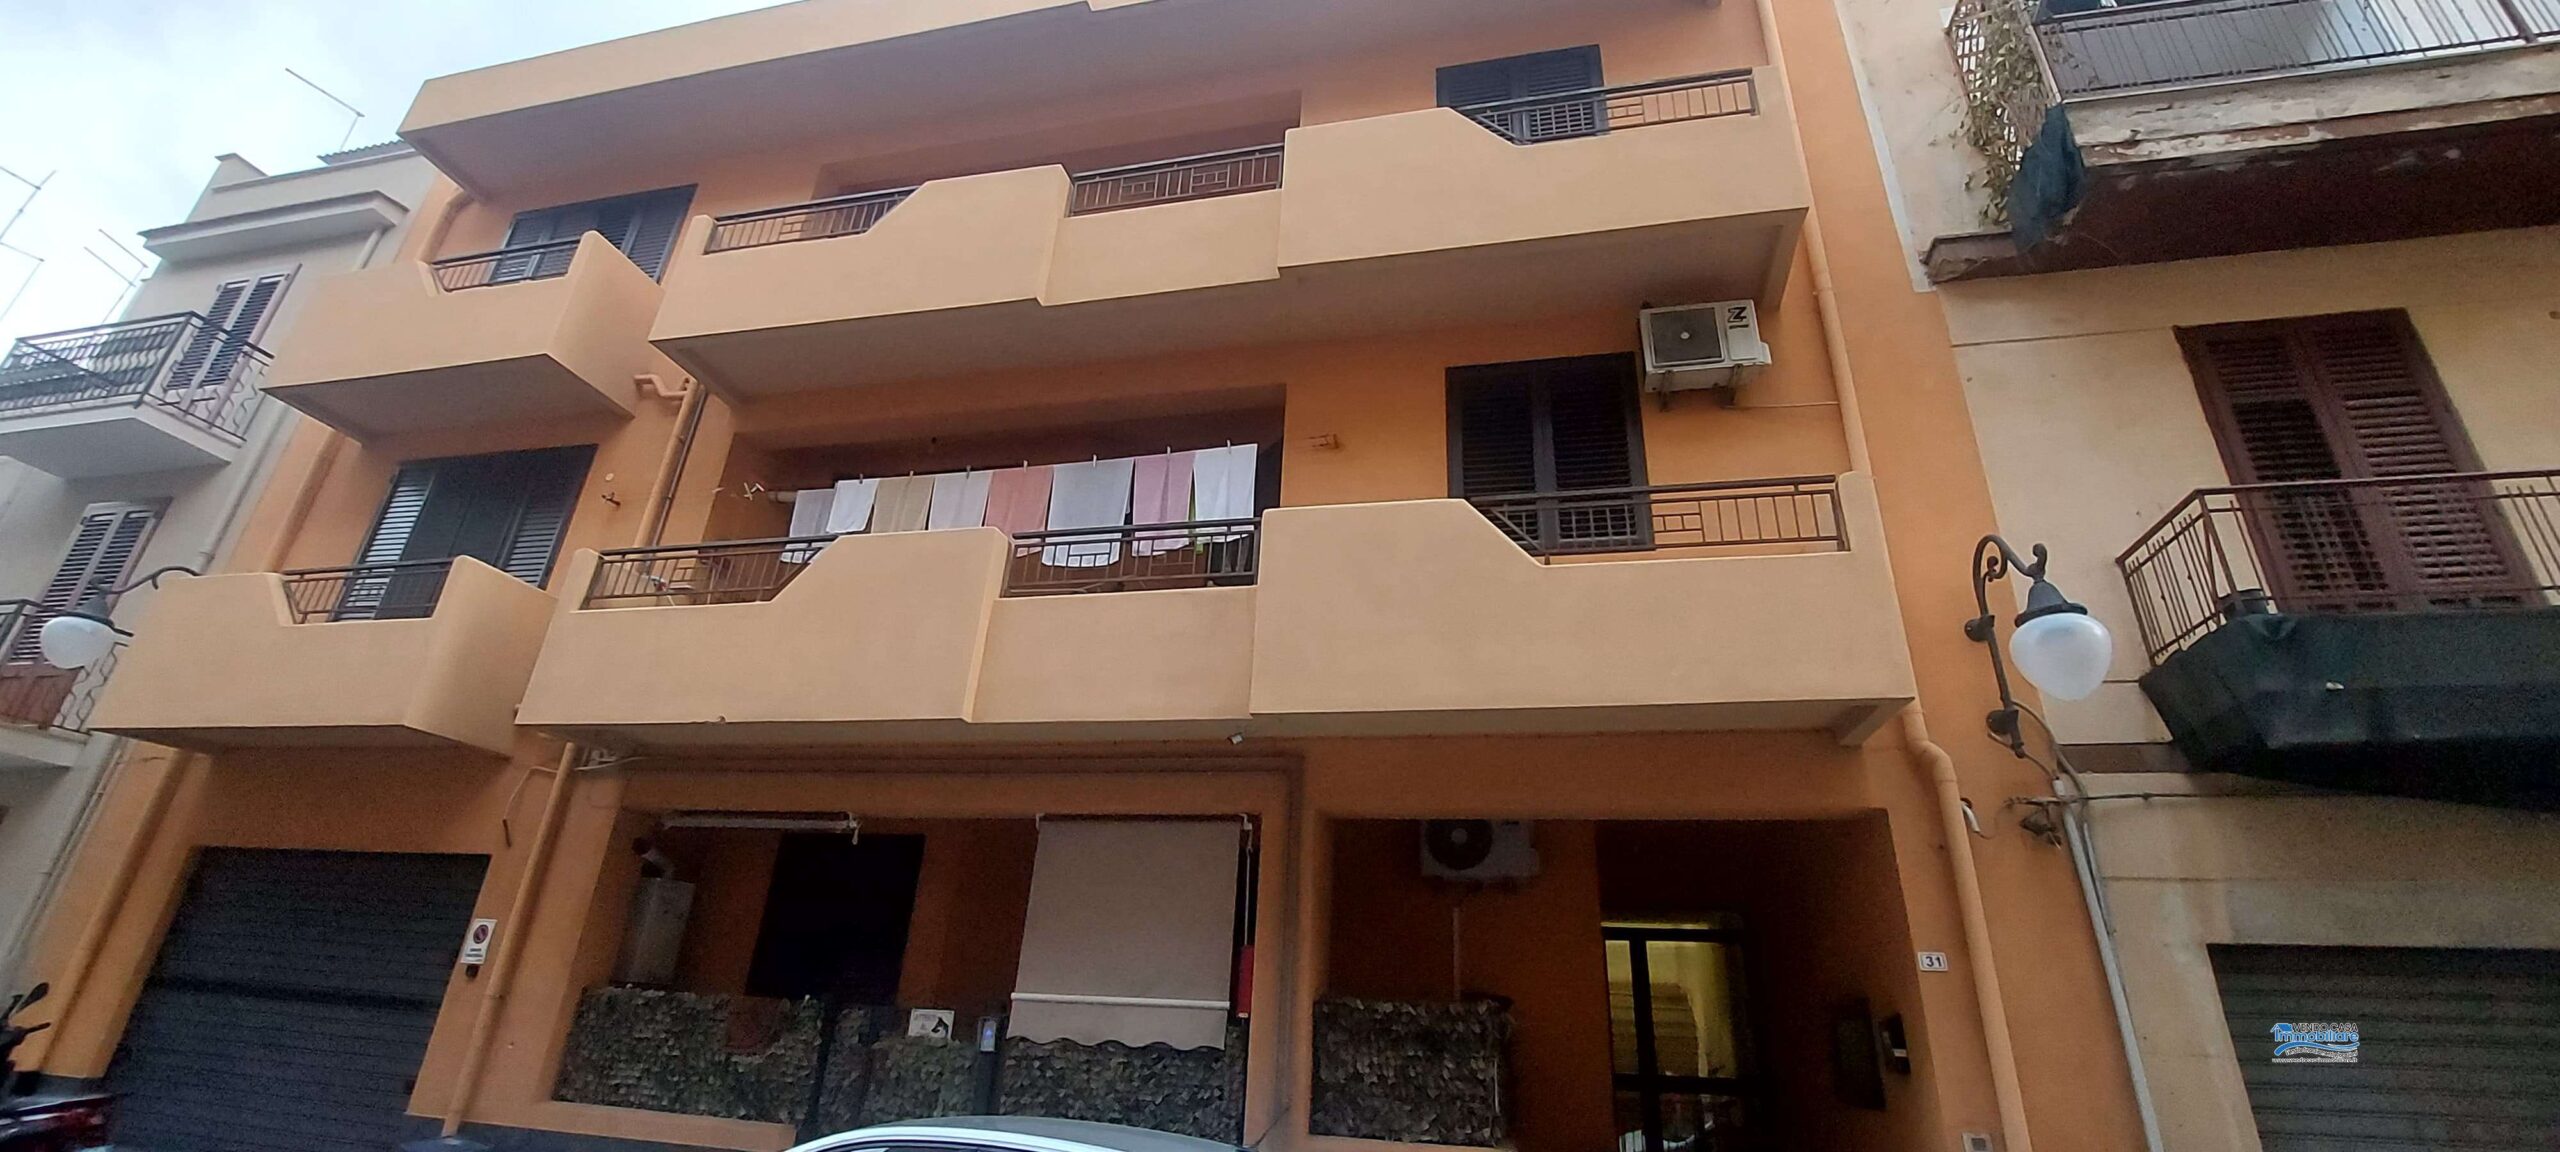 Casteldaccia: Appartamento Via Carlo Cattano